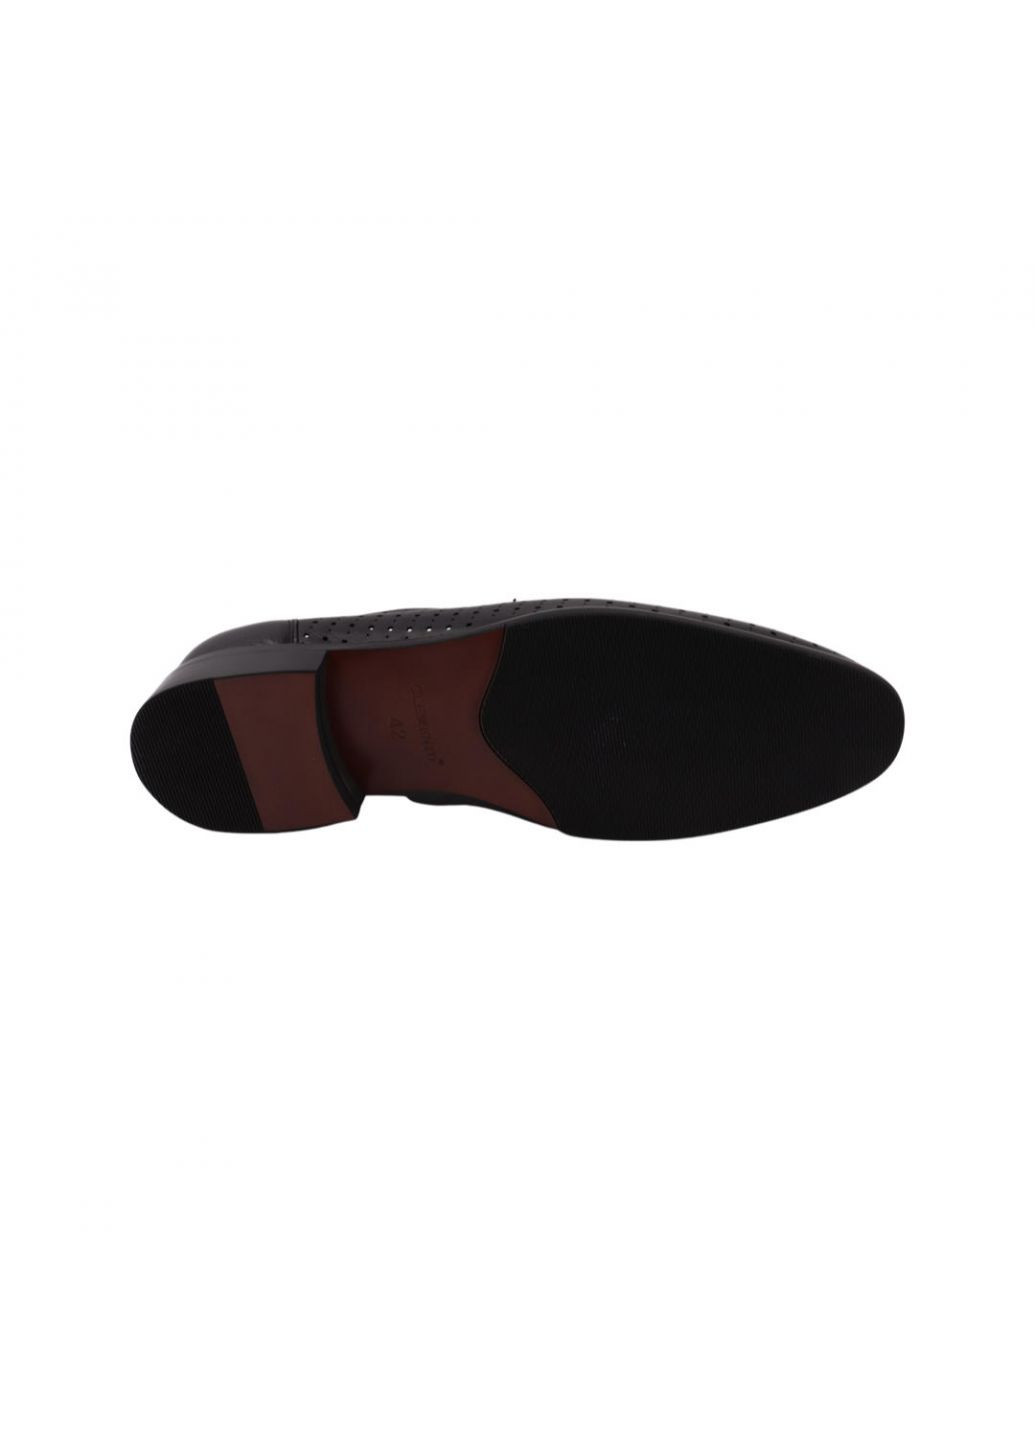 Туфлі чоловічі чорні натуральна шкіра Clemento 22-22ltp (257439322)